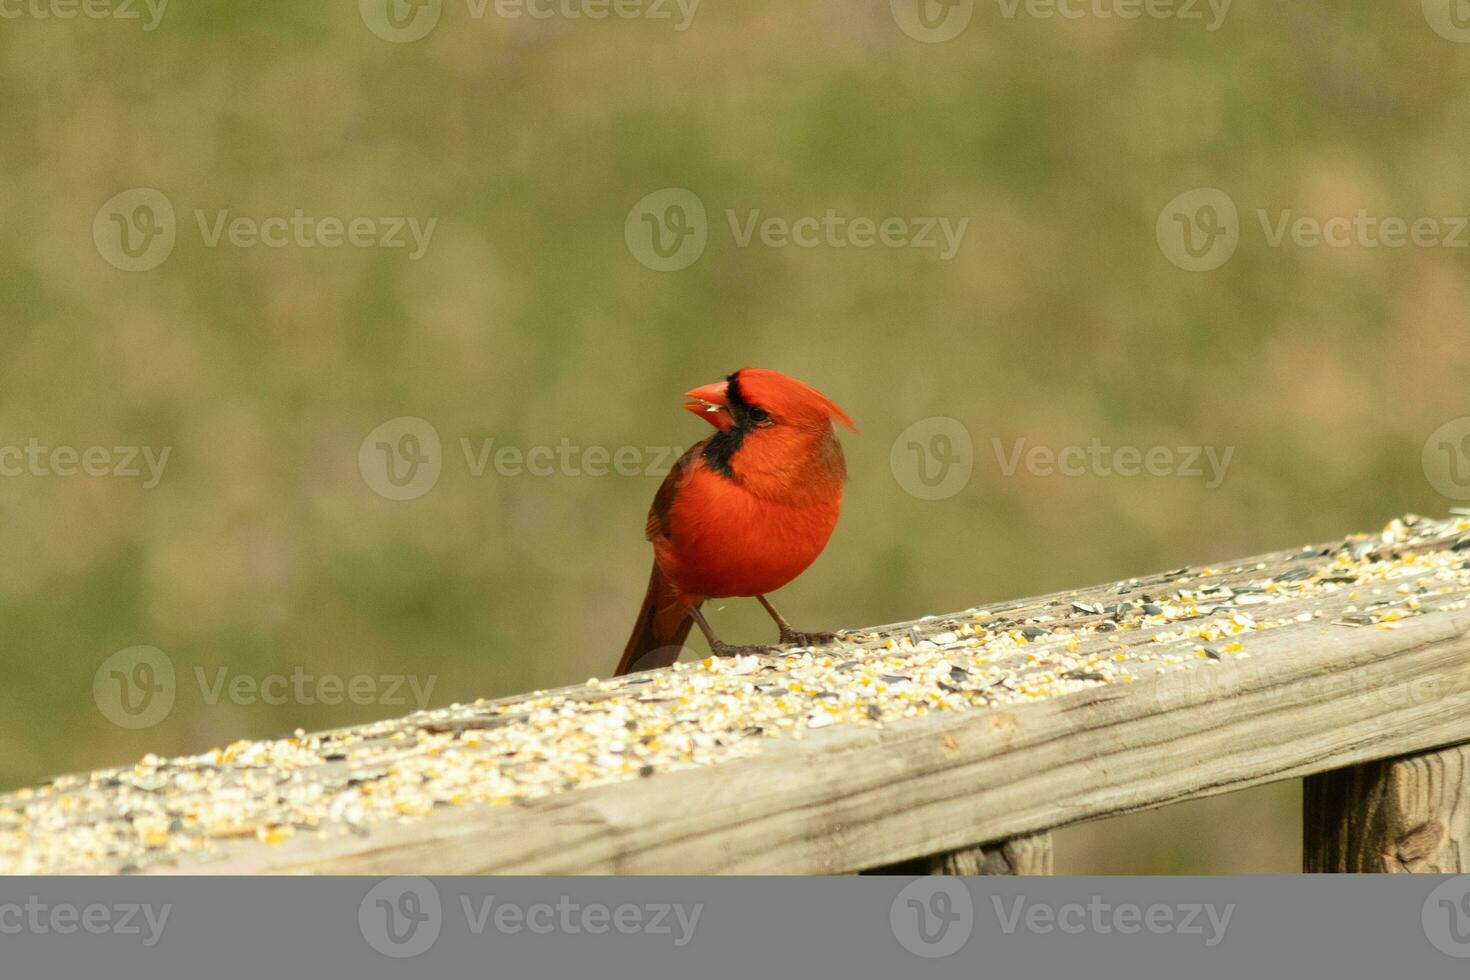 Questo bellissimo rosso cardinale è venuto su per il Marrone di legno ringhiera di il ponte per cibo. il suo poco mohawk spinto giù con il suo nero maschera. Questo poco aviaria è circondato di becchime. foto